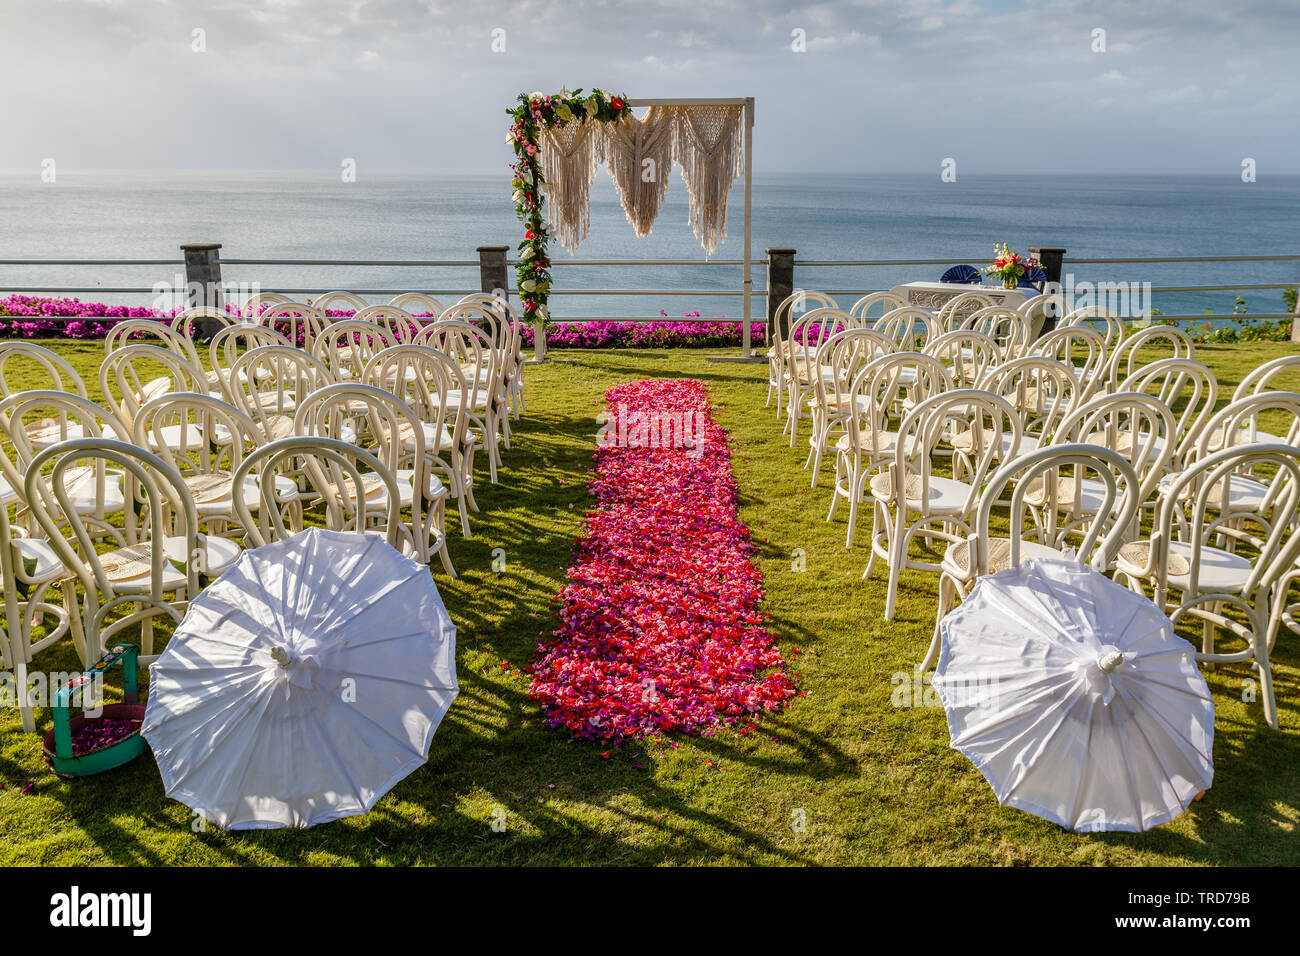 Arch dans mariage style Boho près de l'océan de cérémonie décoré de macrame et fleurs fraîches. Chaises longues, parasols et l'allée de pétales roses et rouges. Bali Banque D'Images